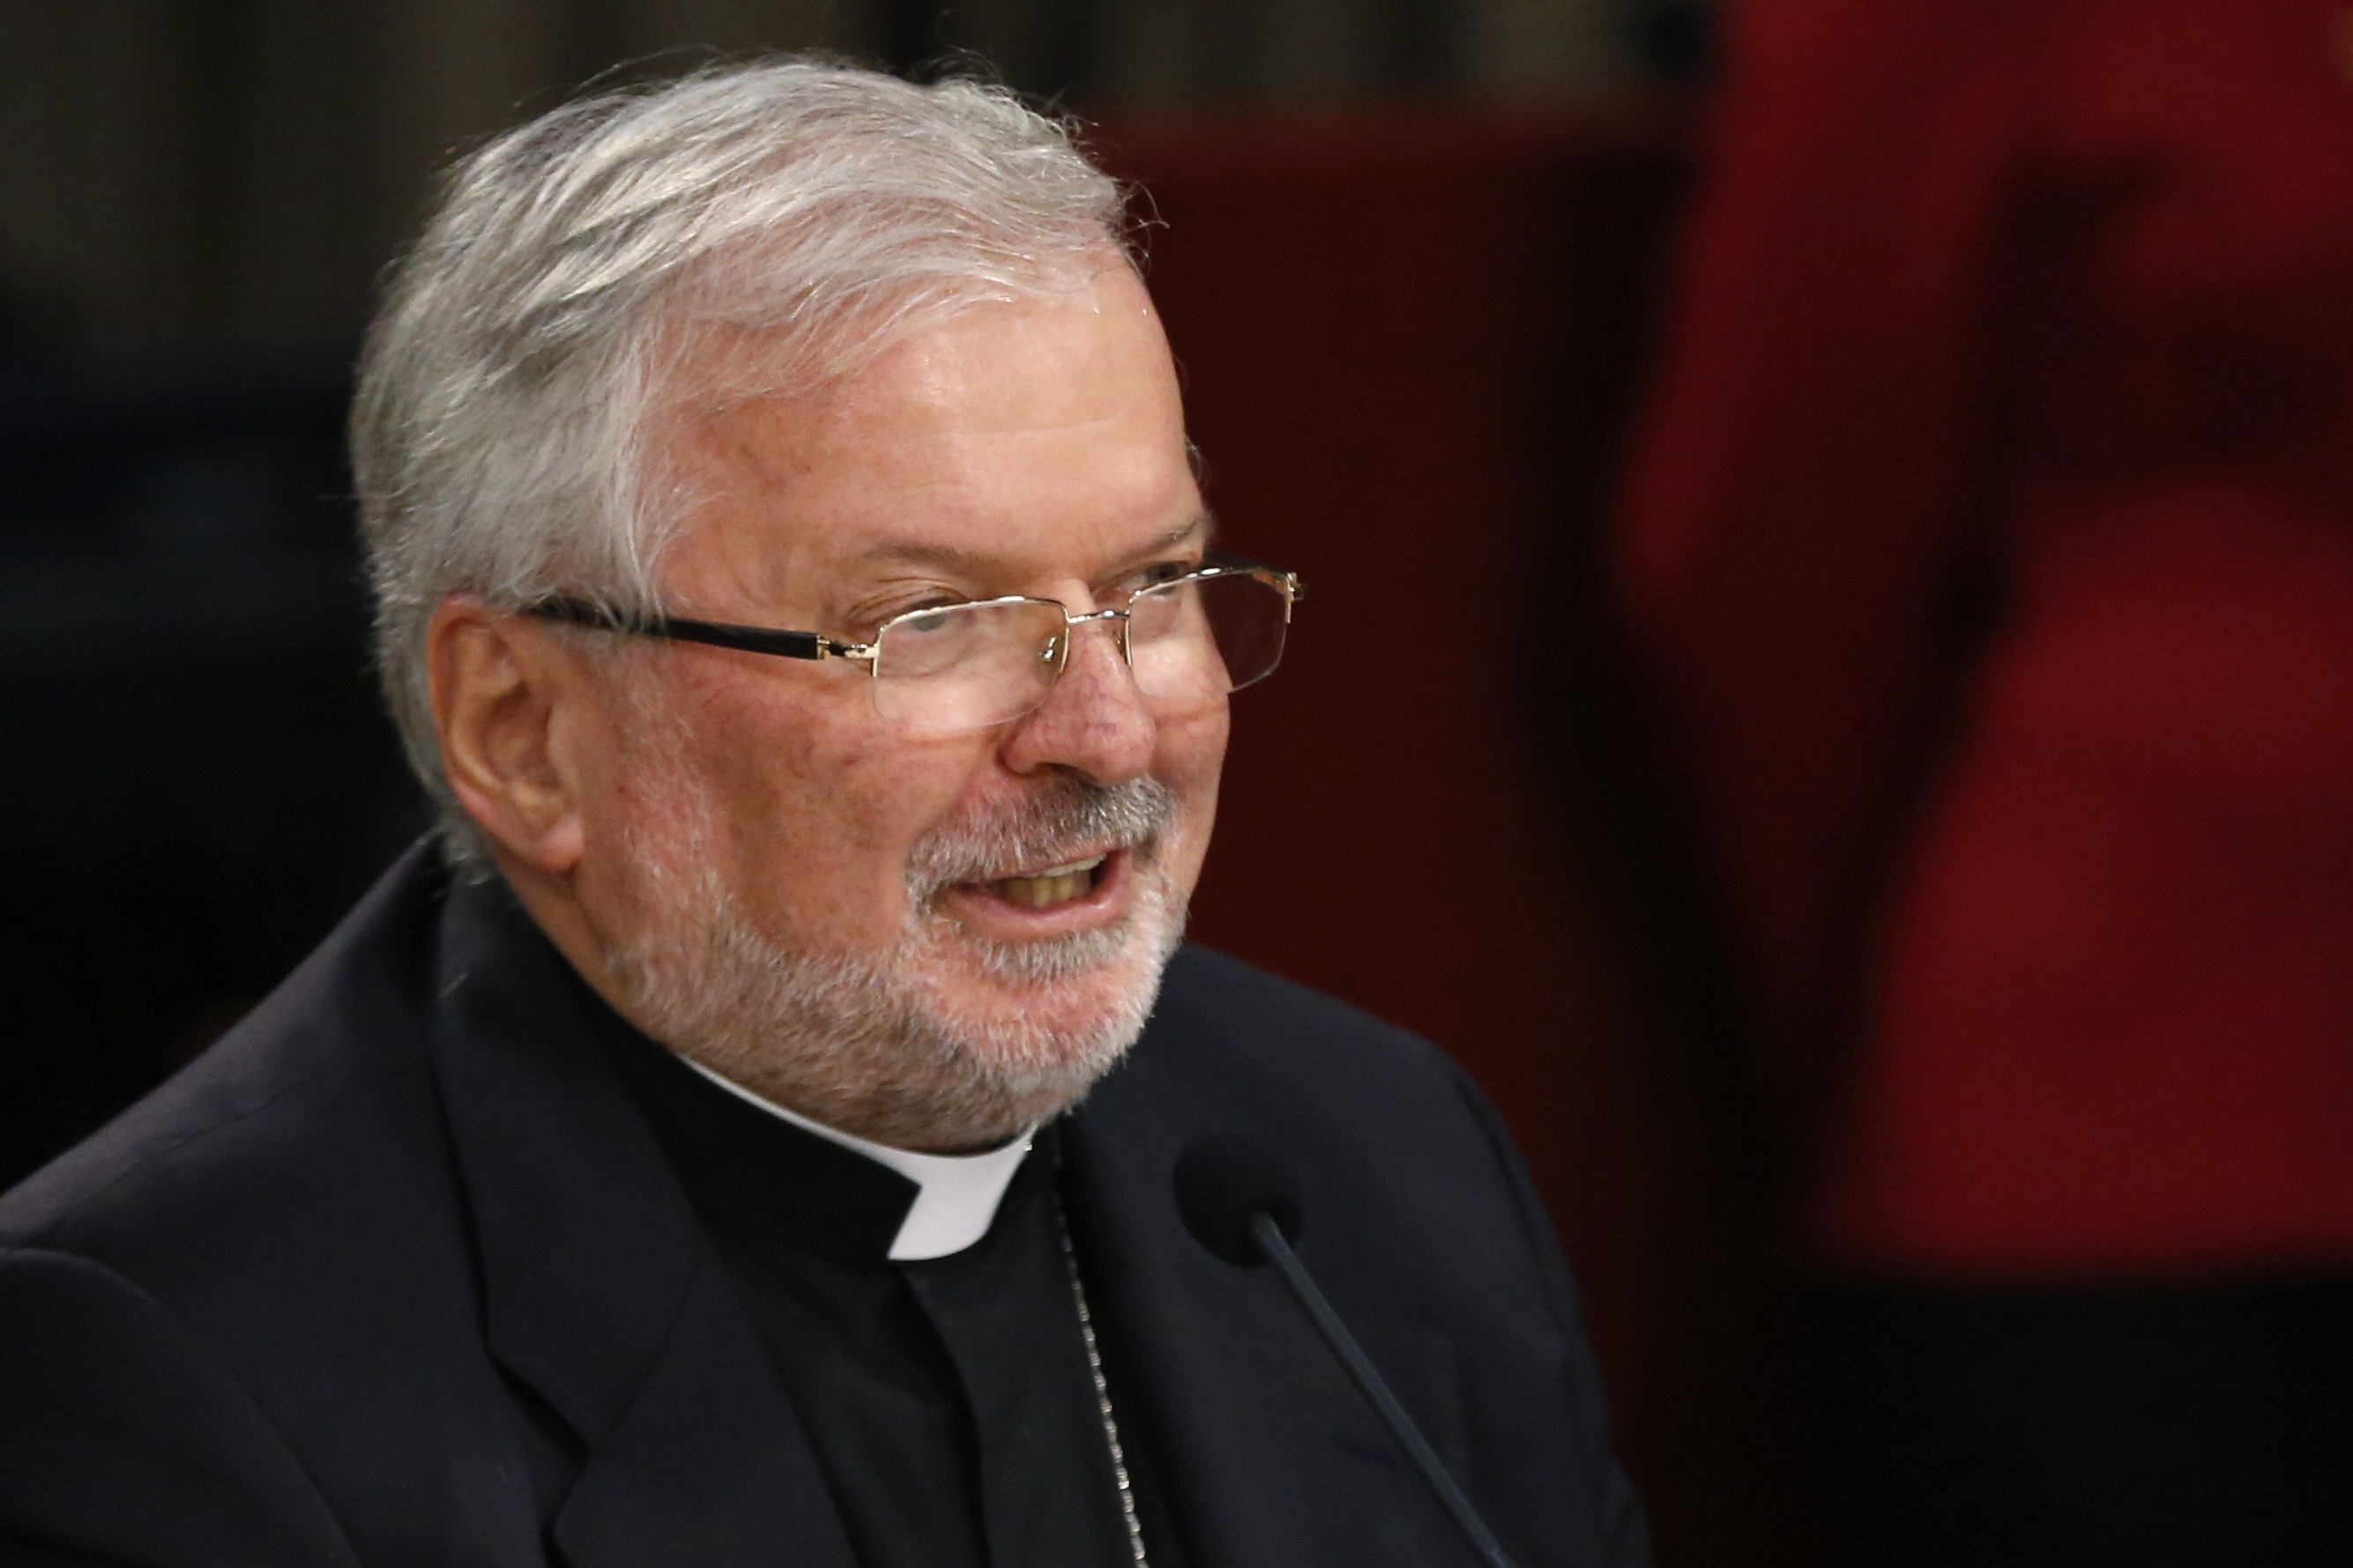 Nuncio apostólico: Los pueblos necesitan el coraje del diálogo